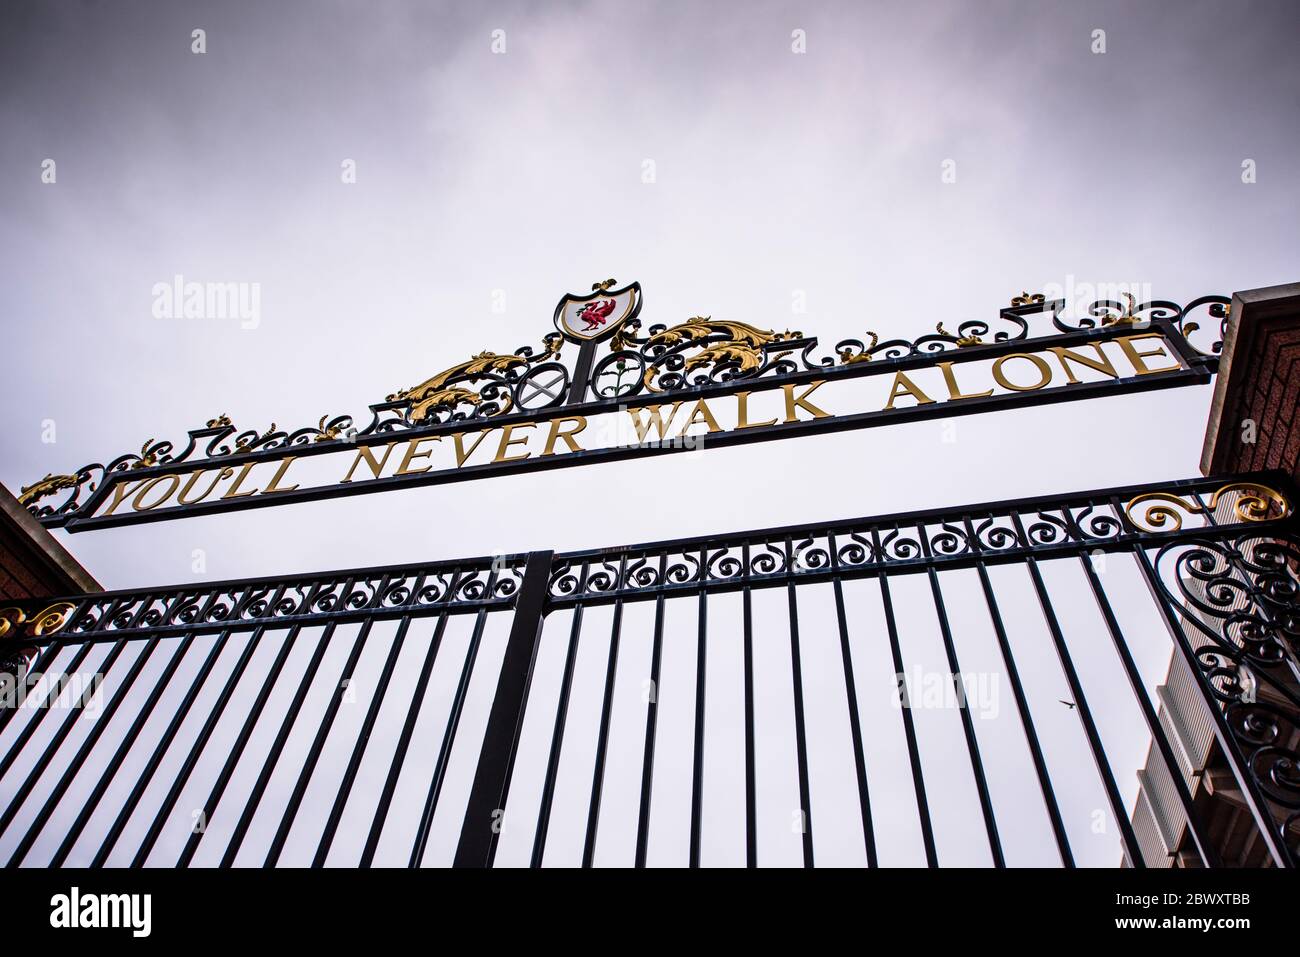 Sie werden nie allein gehen. Bill Shankly Memorial Gate. Anfield, Liverpool, Großbritannien. Stockfoto